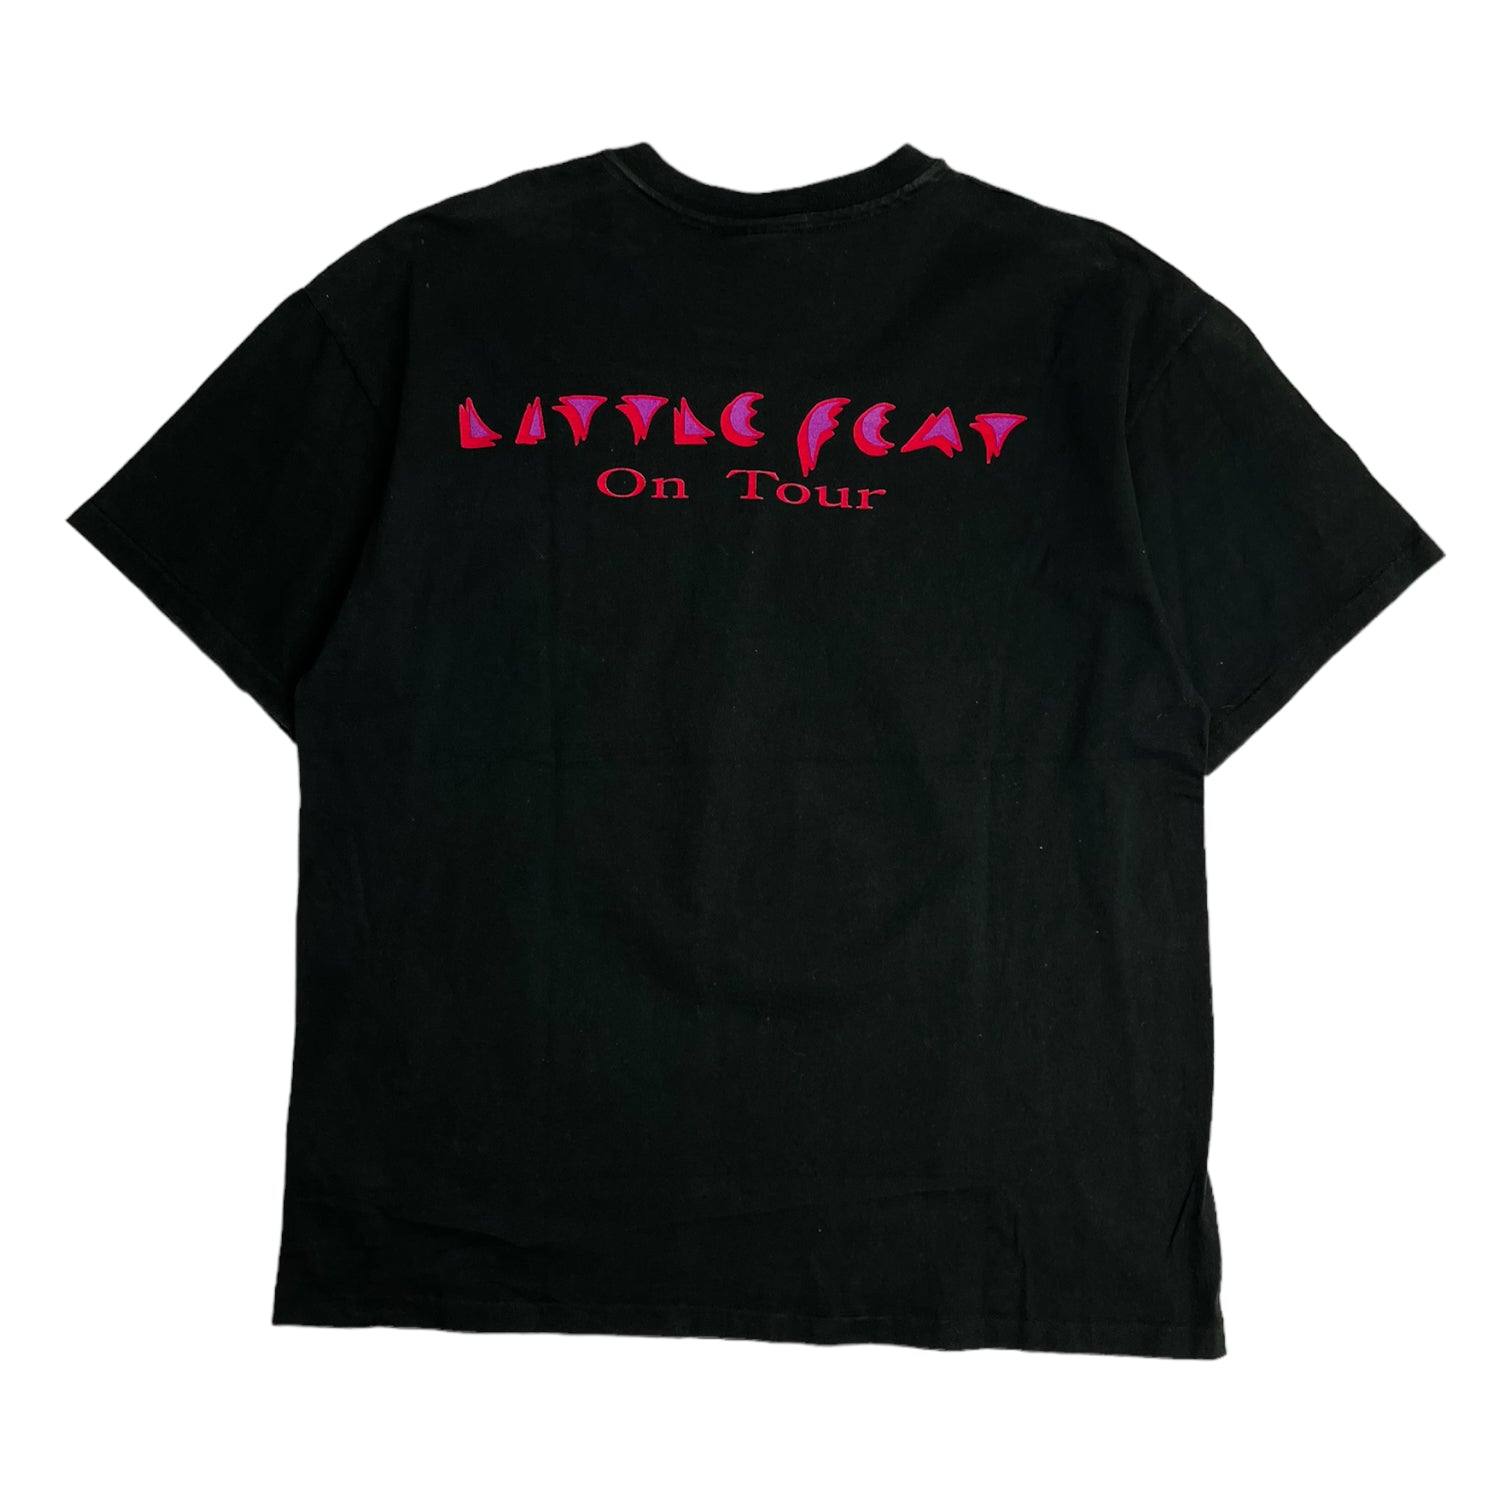 Sleek Black 1988 Little Feat Tour T-Shirt